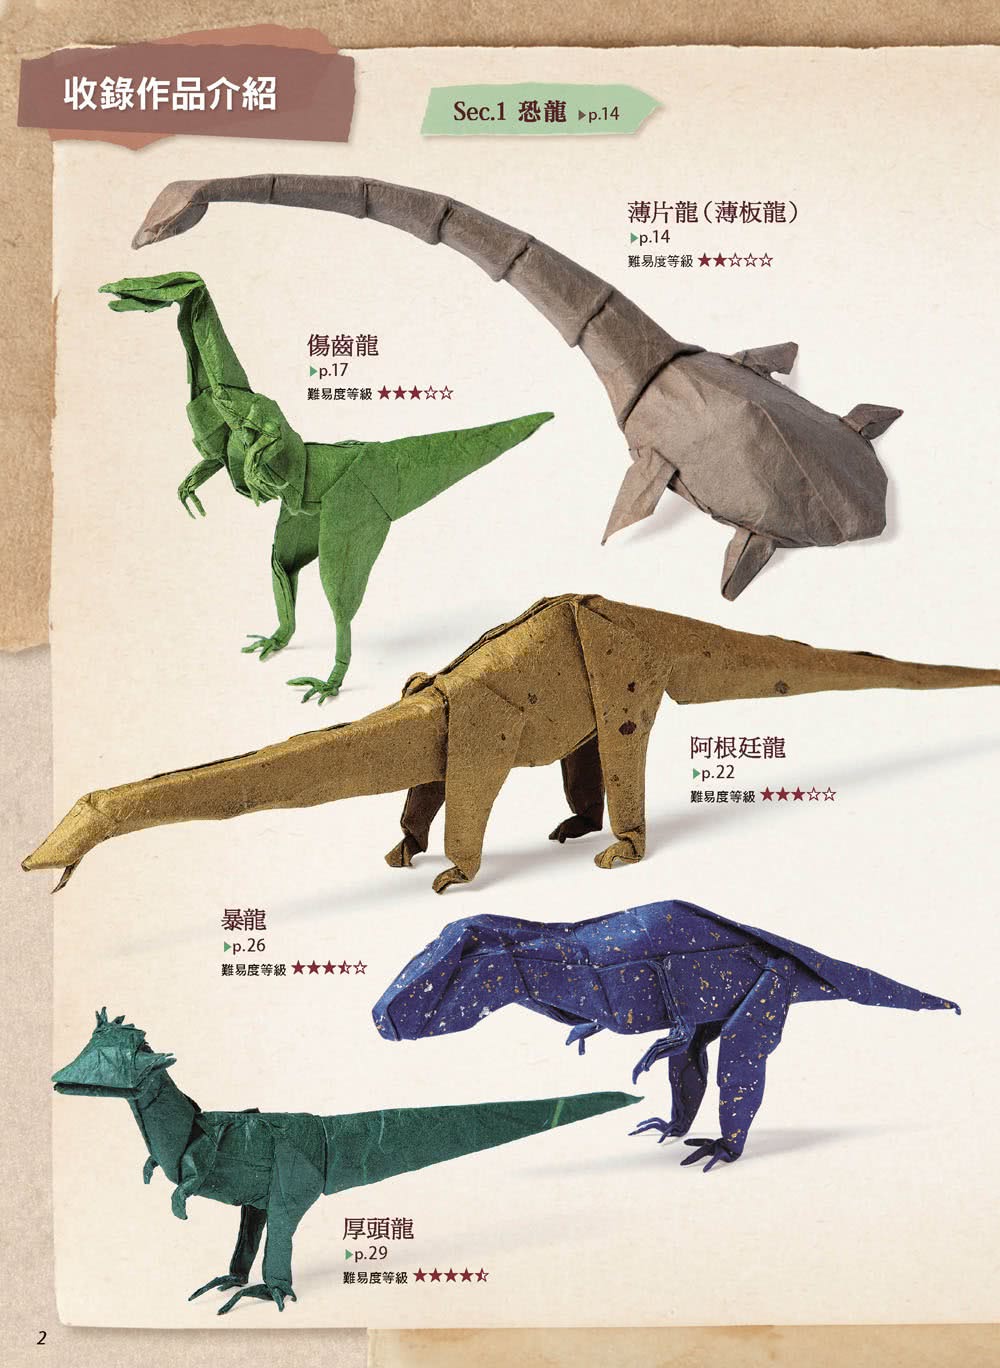 擬真摺紙5：超厲害！恐龍與古代生物篇